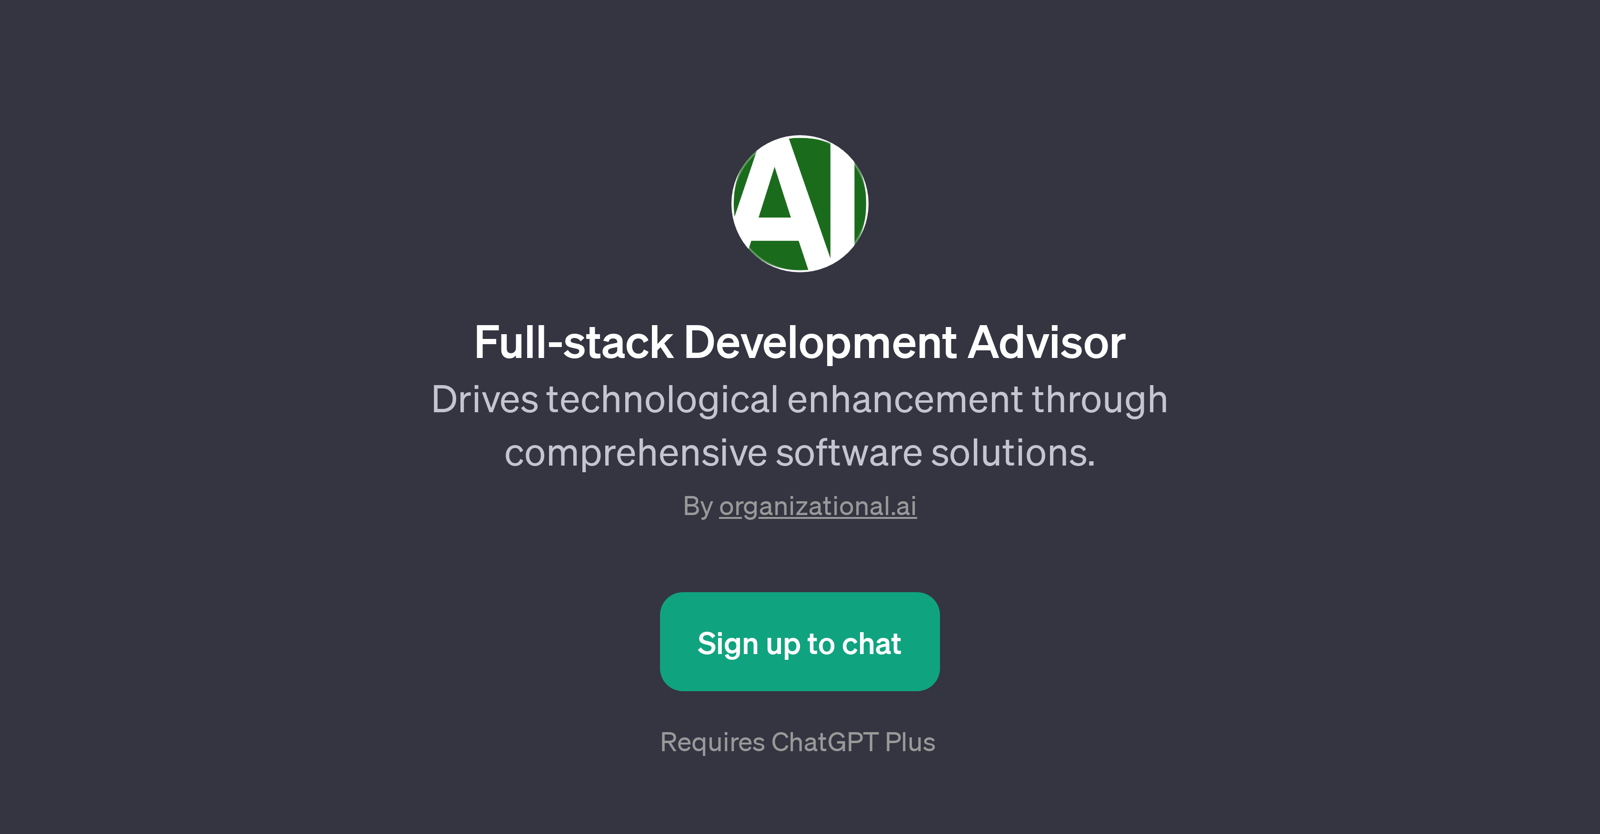 Full-stack Development Advisor website